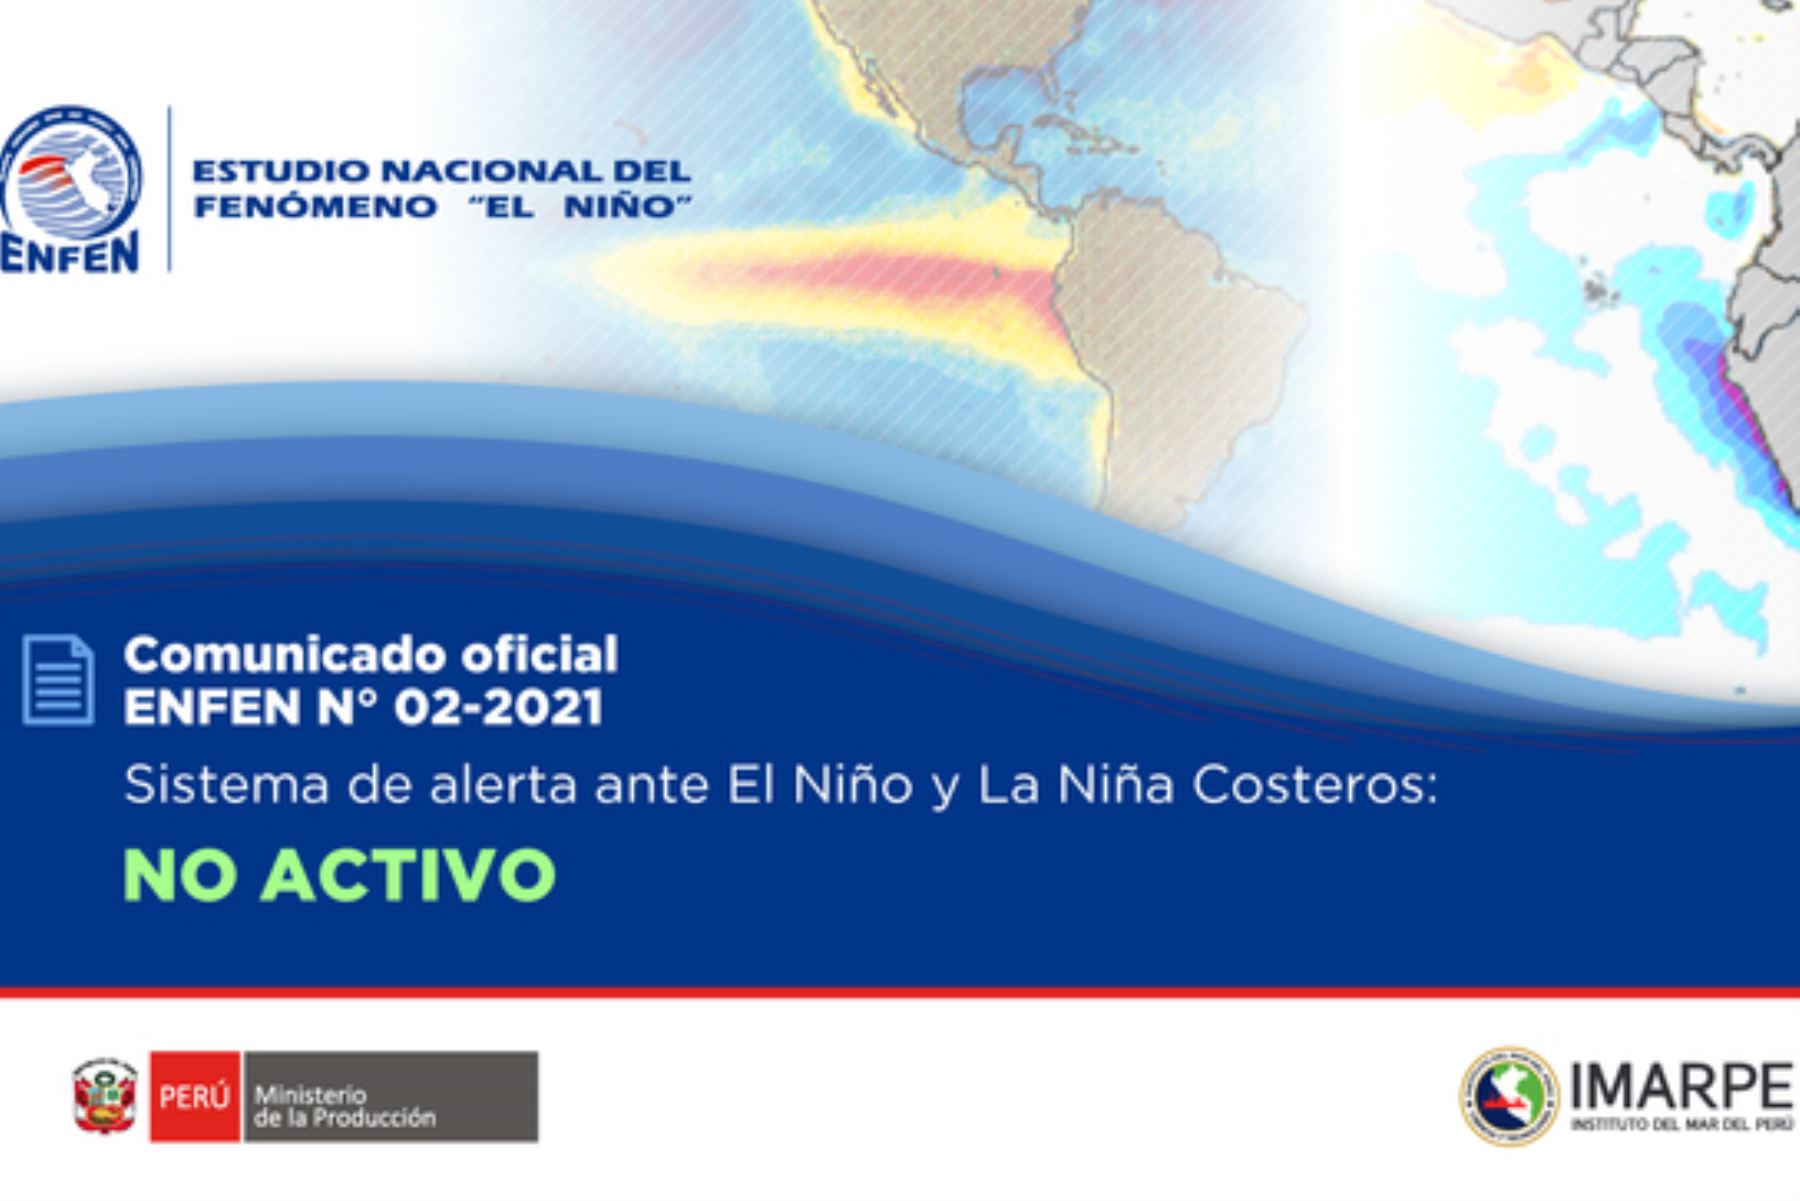 La Comisión Multisectorial del Enfen mantiene "no activo" el estado del “Sistema de alerta ante El Niño y La Niña costeros”